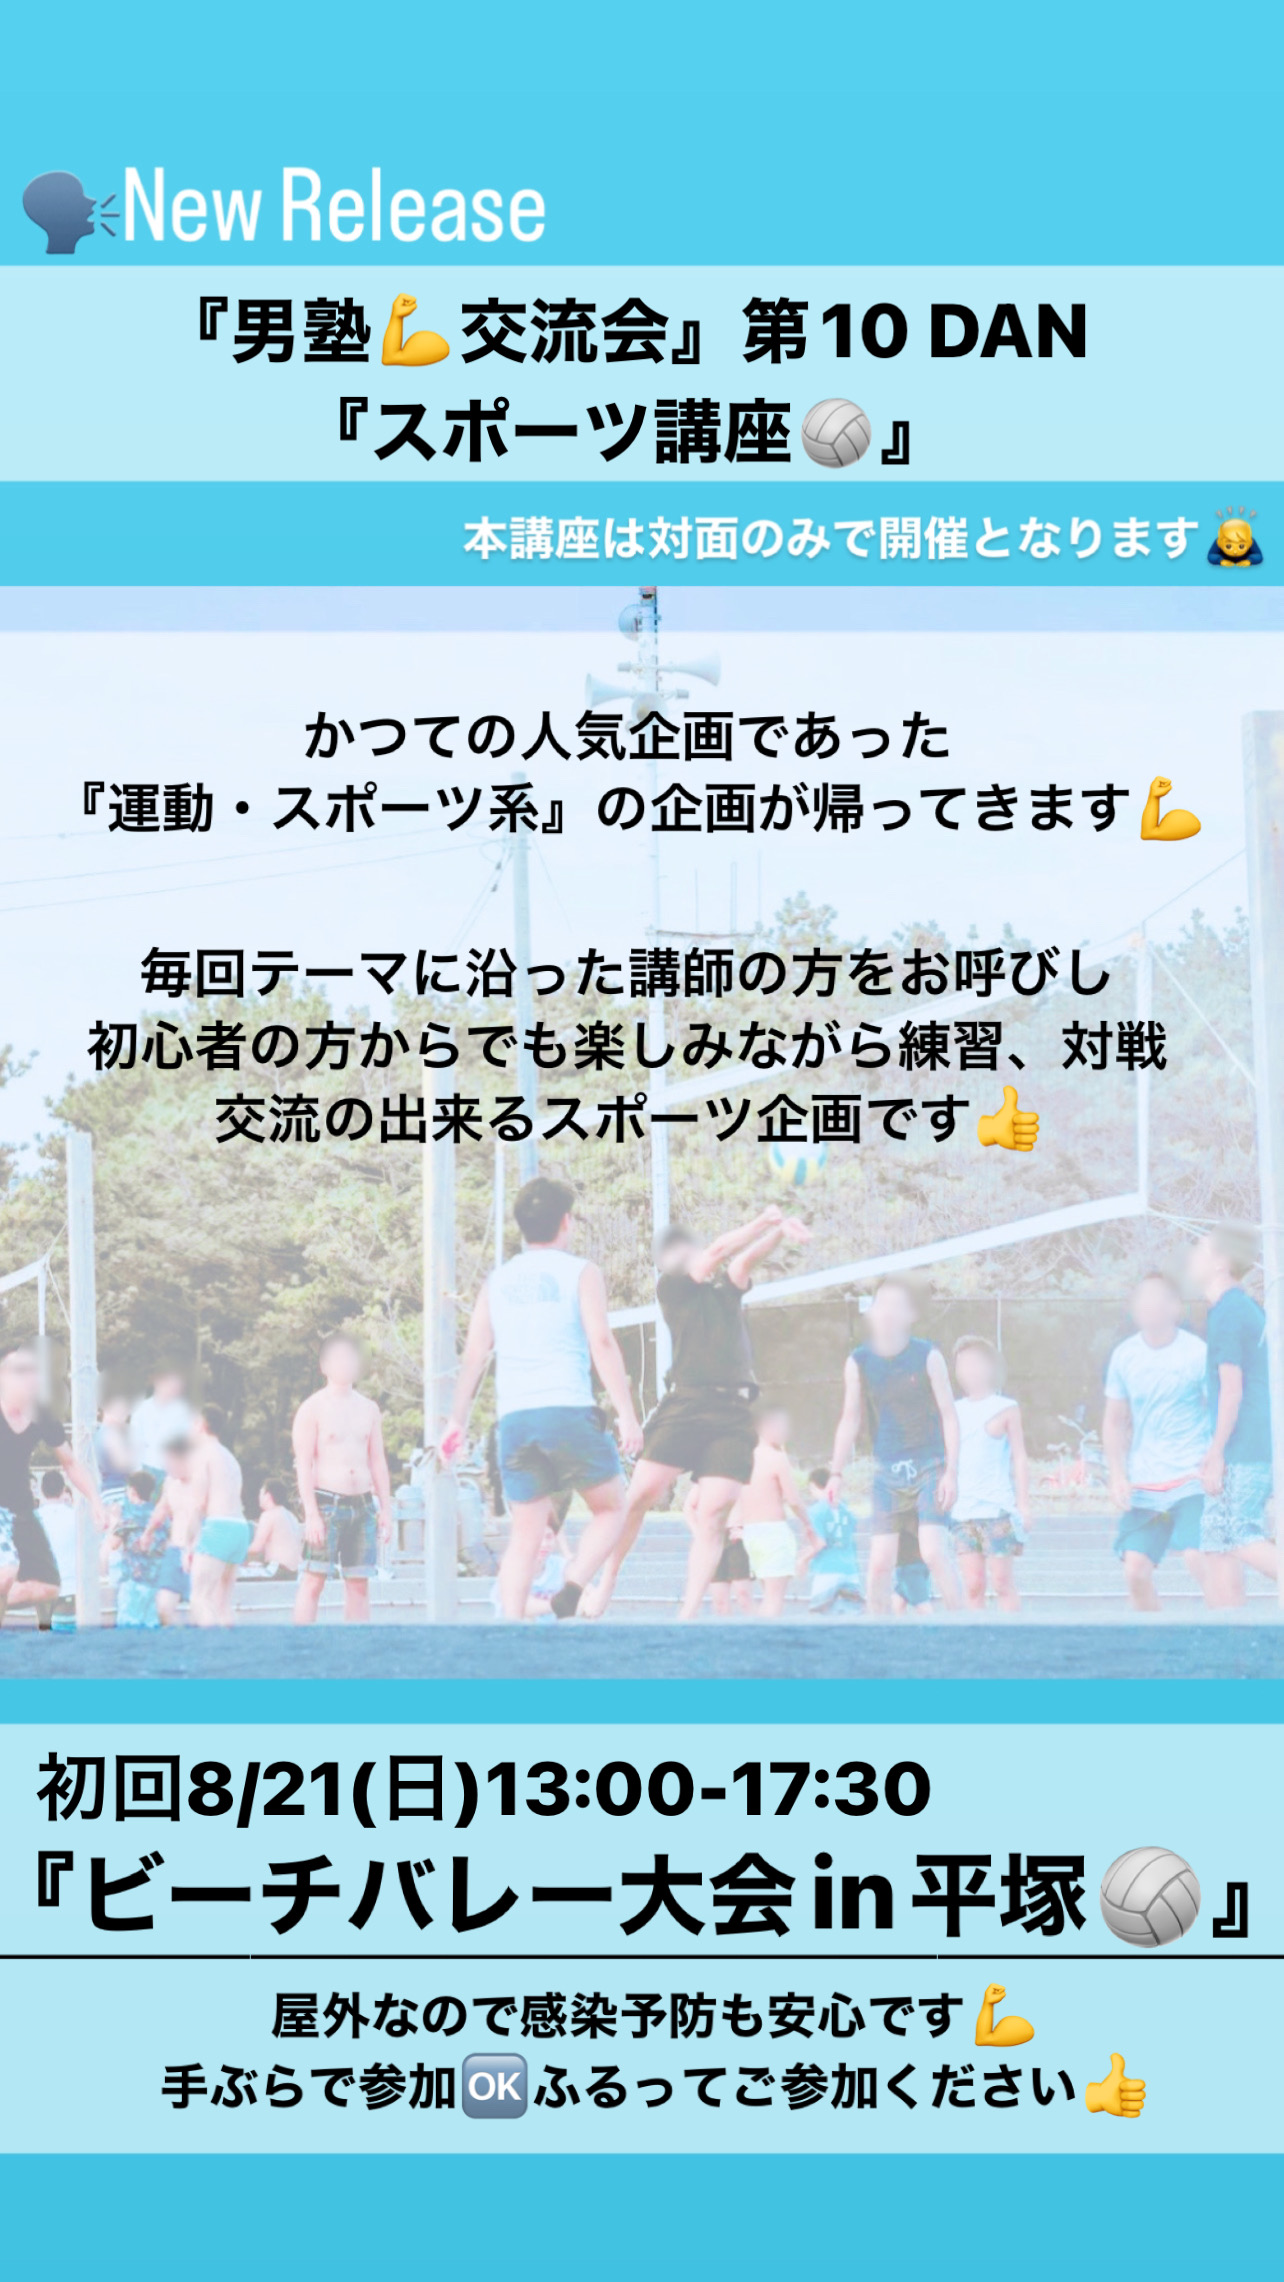 8/21(日)13:00-17:30ビーチバレー大会in平塚🏐